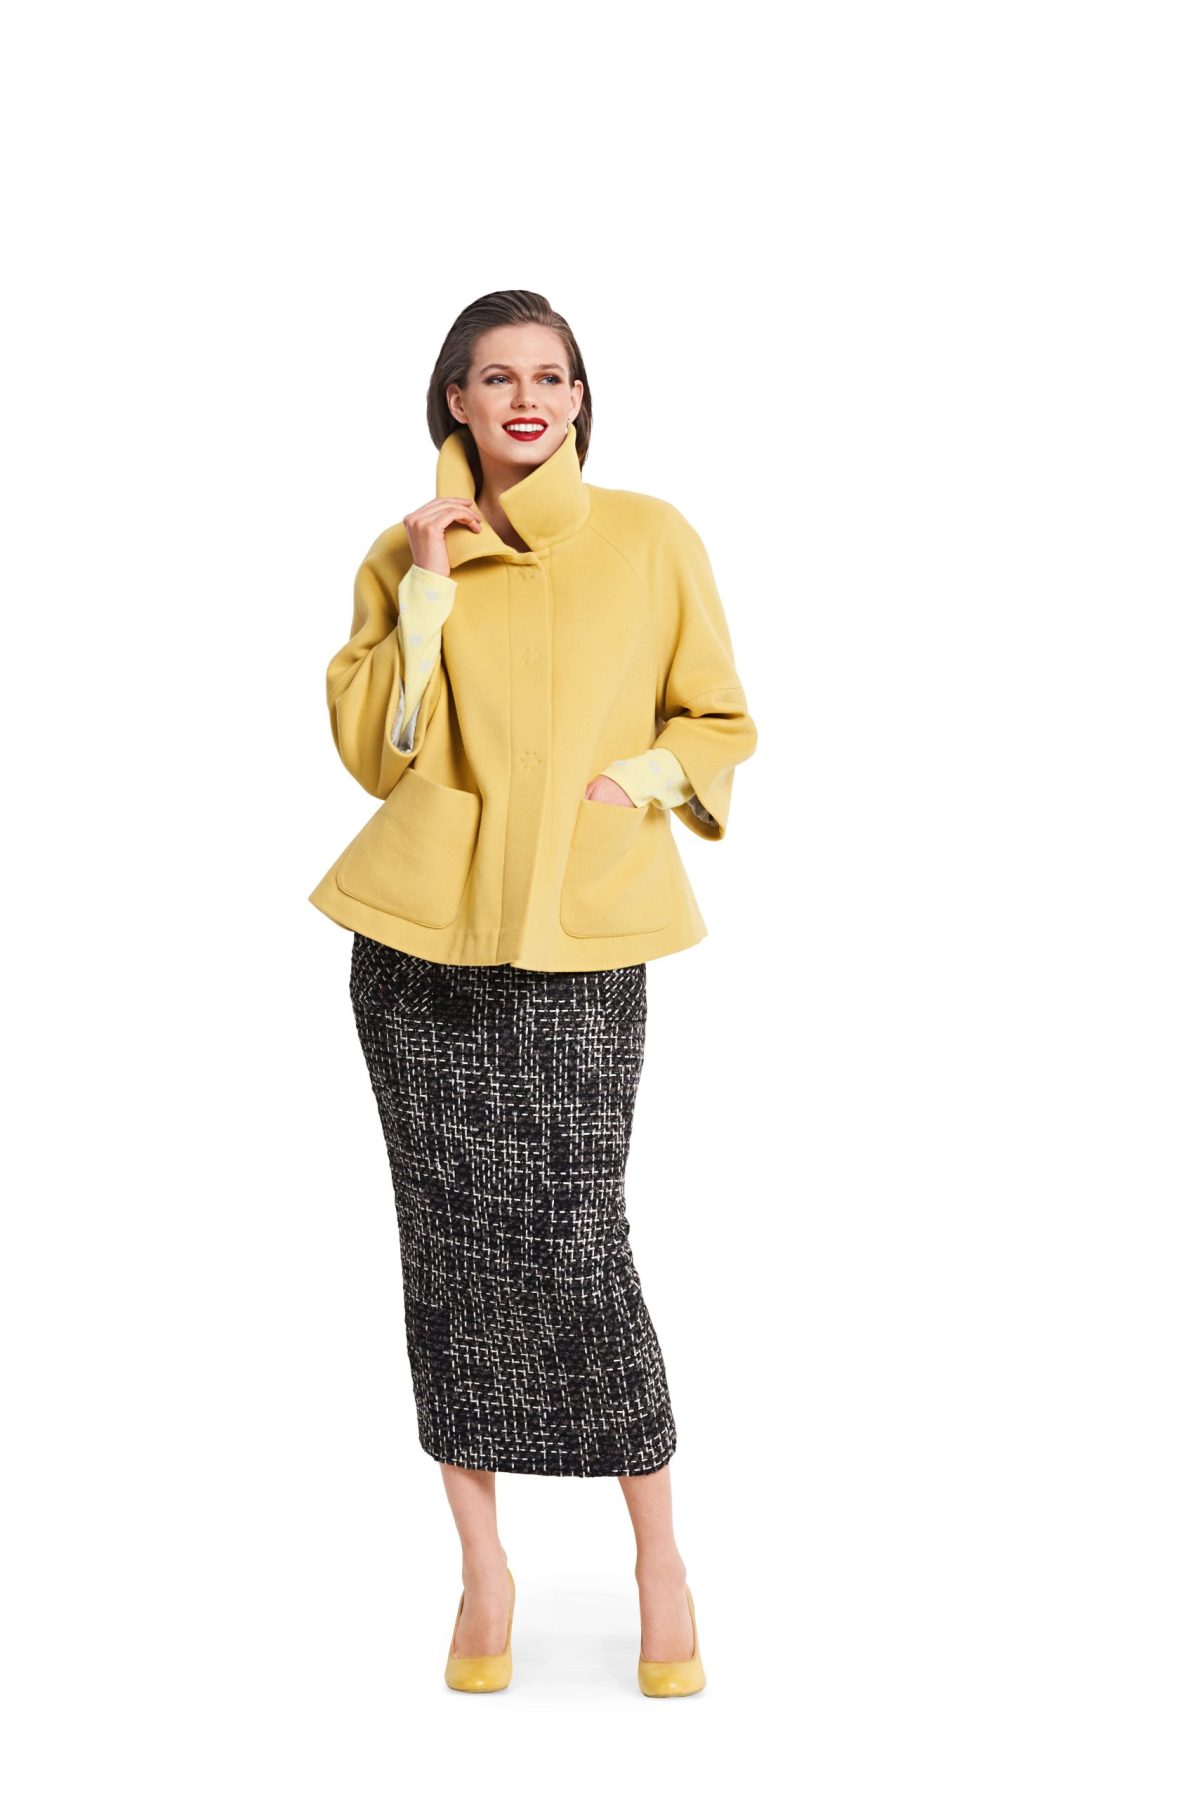 Burda Style Pattern B6372 Women's Jacket